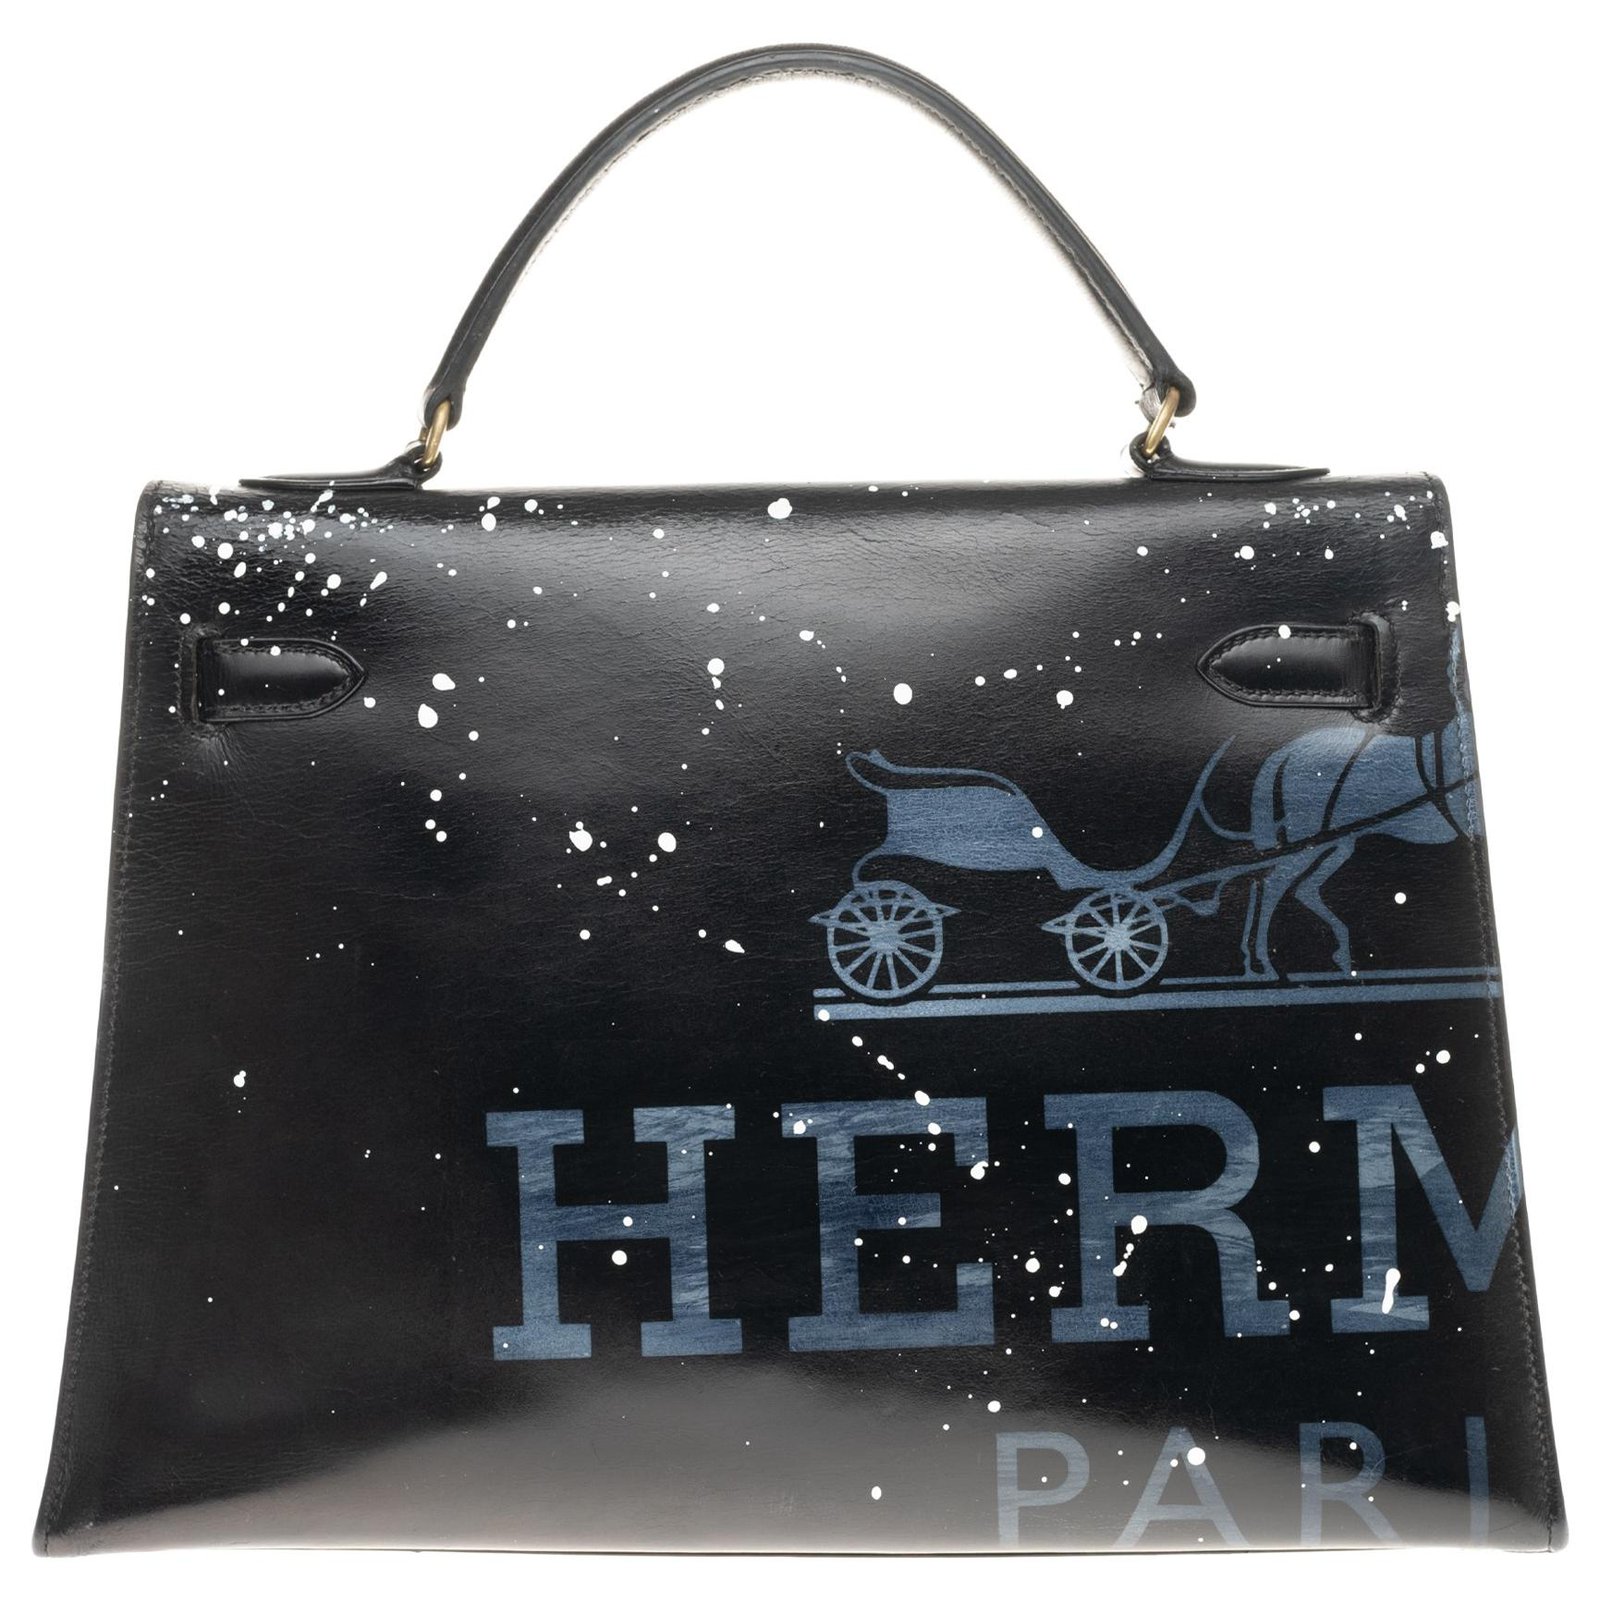 Hermès hermes kelly 32 saddle in black box Audrey Hepburn